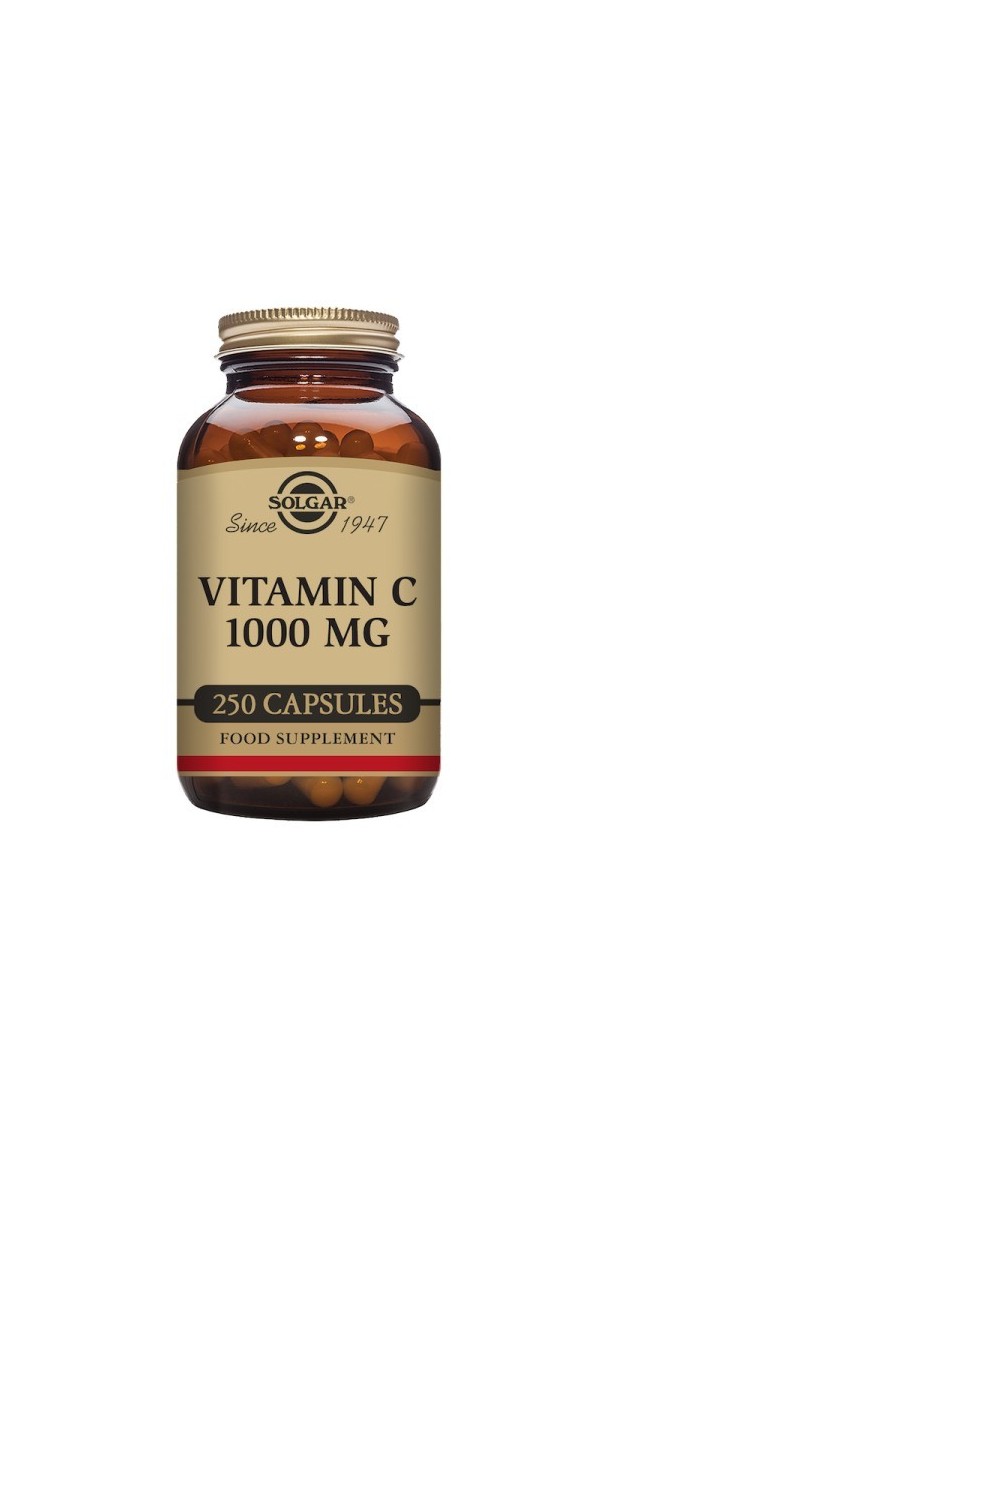 Solgar Vitamin C 1000 mg 250 Capsules